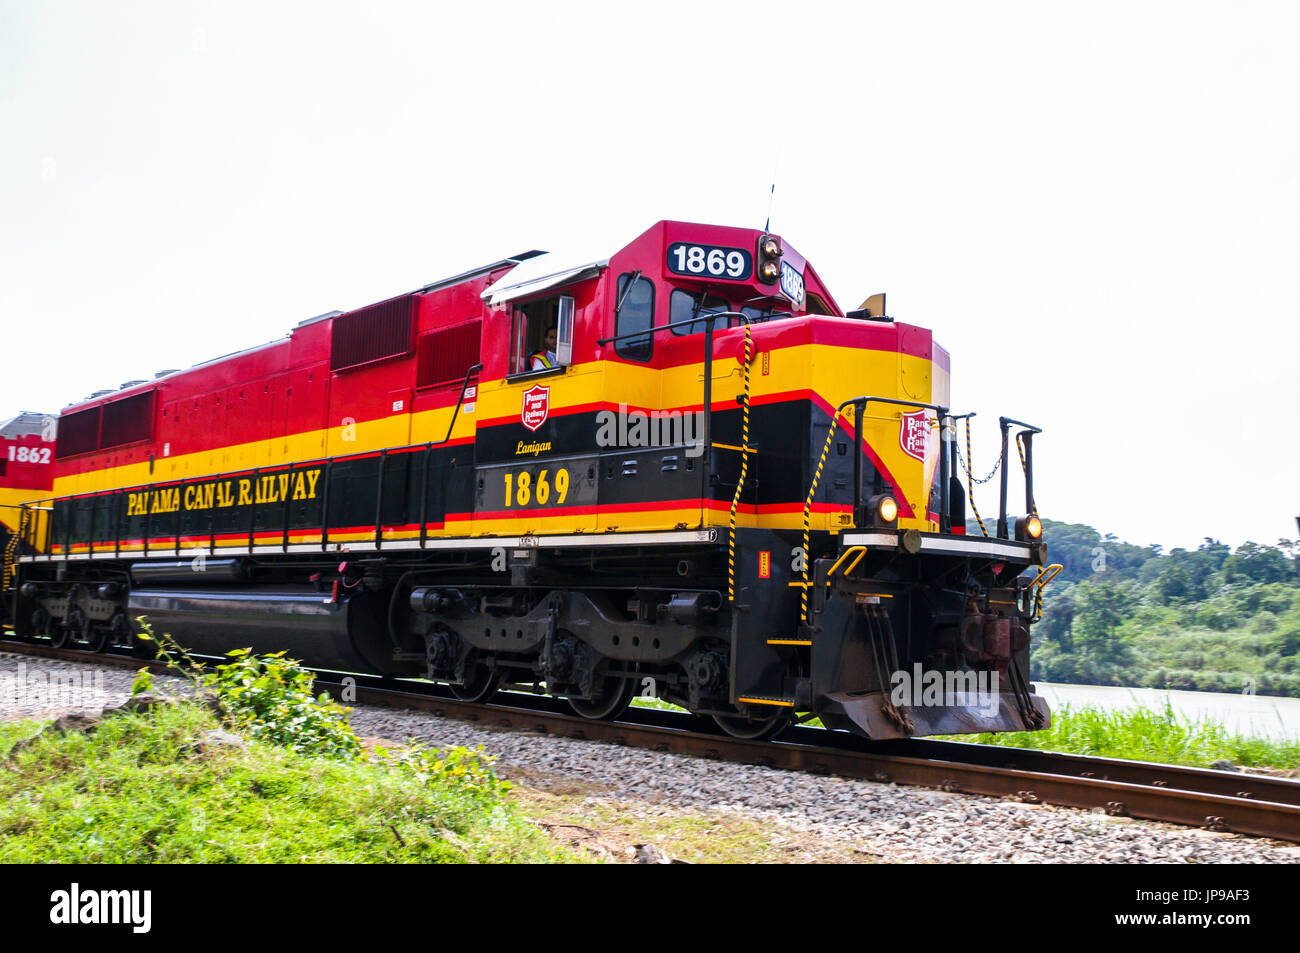 Panama canal railway locomitive Stock Photo